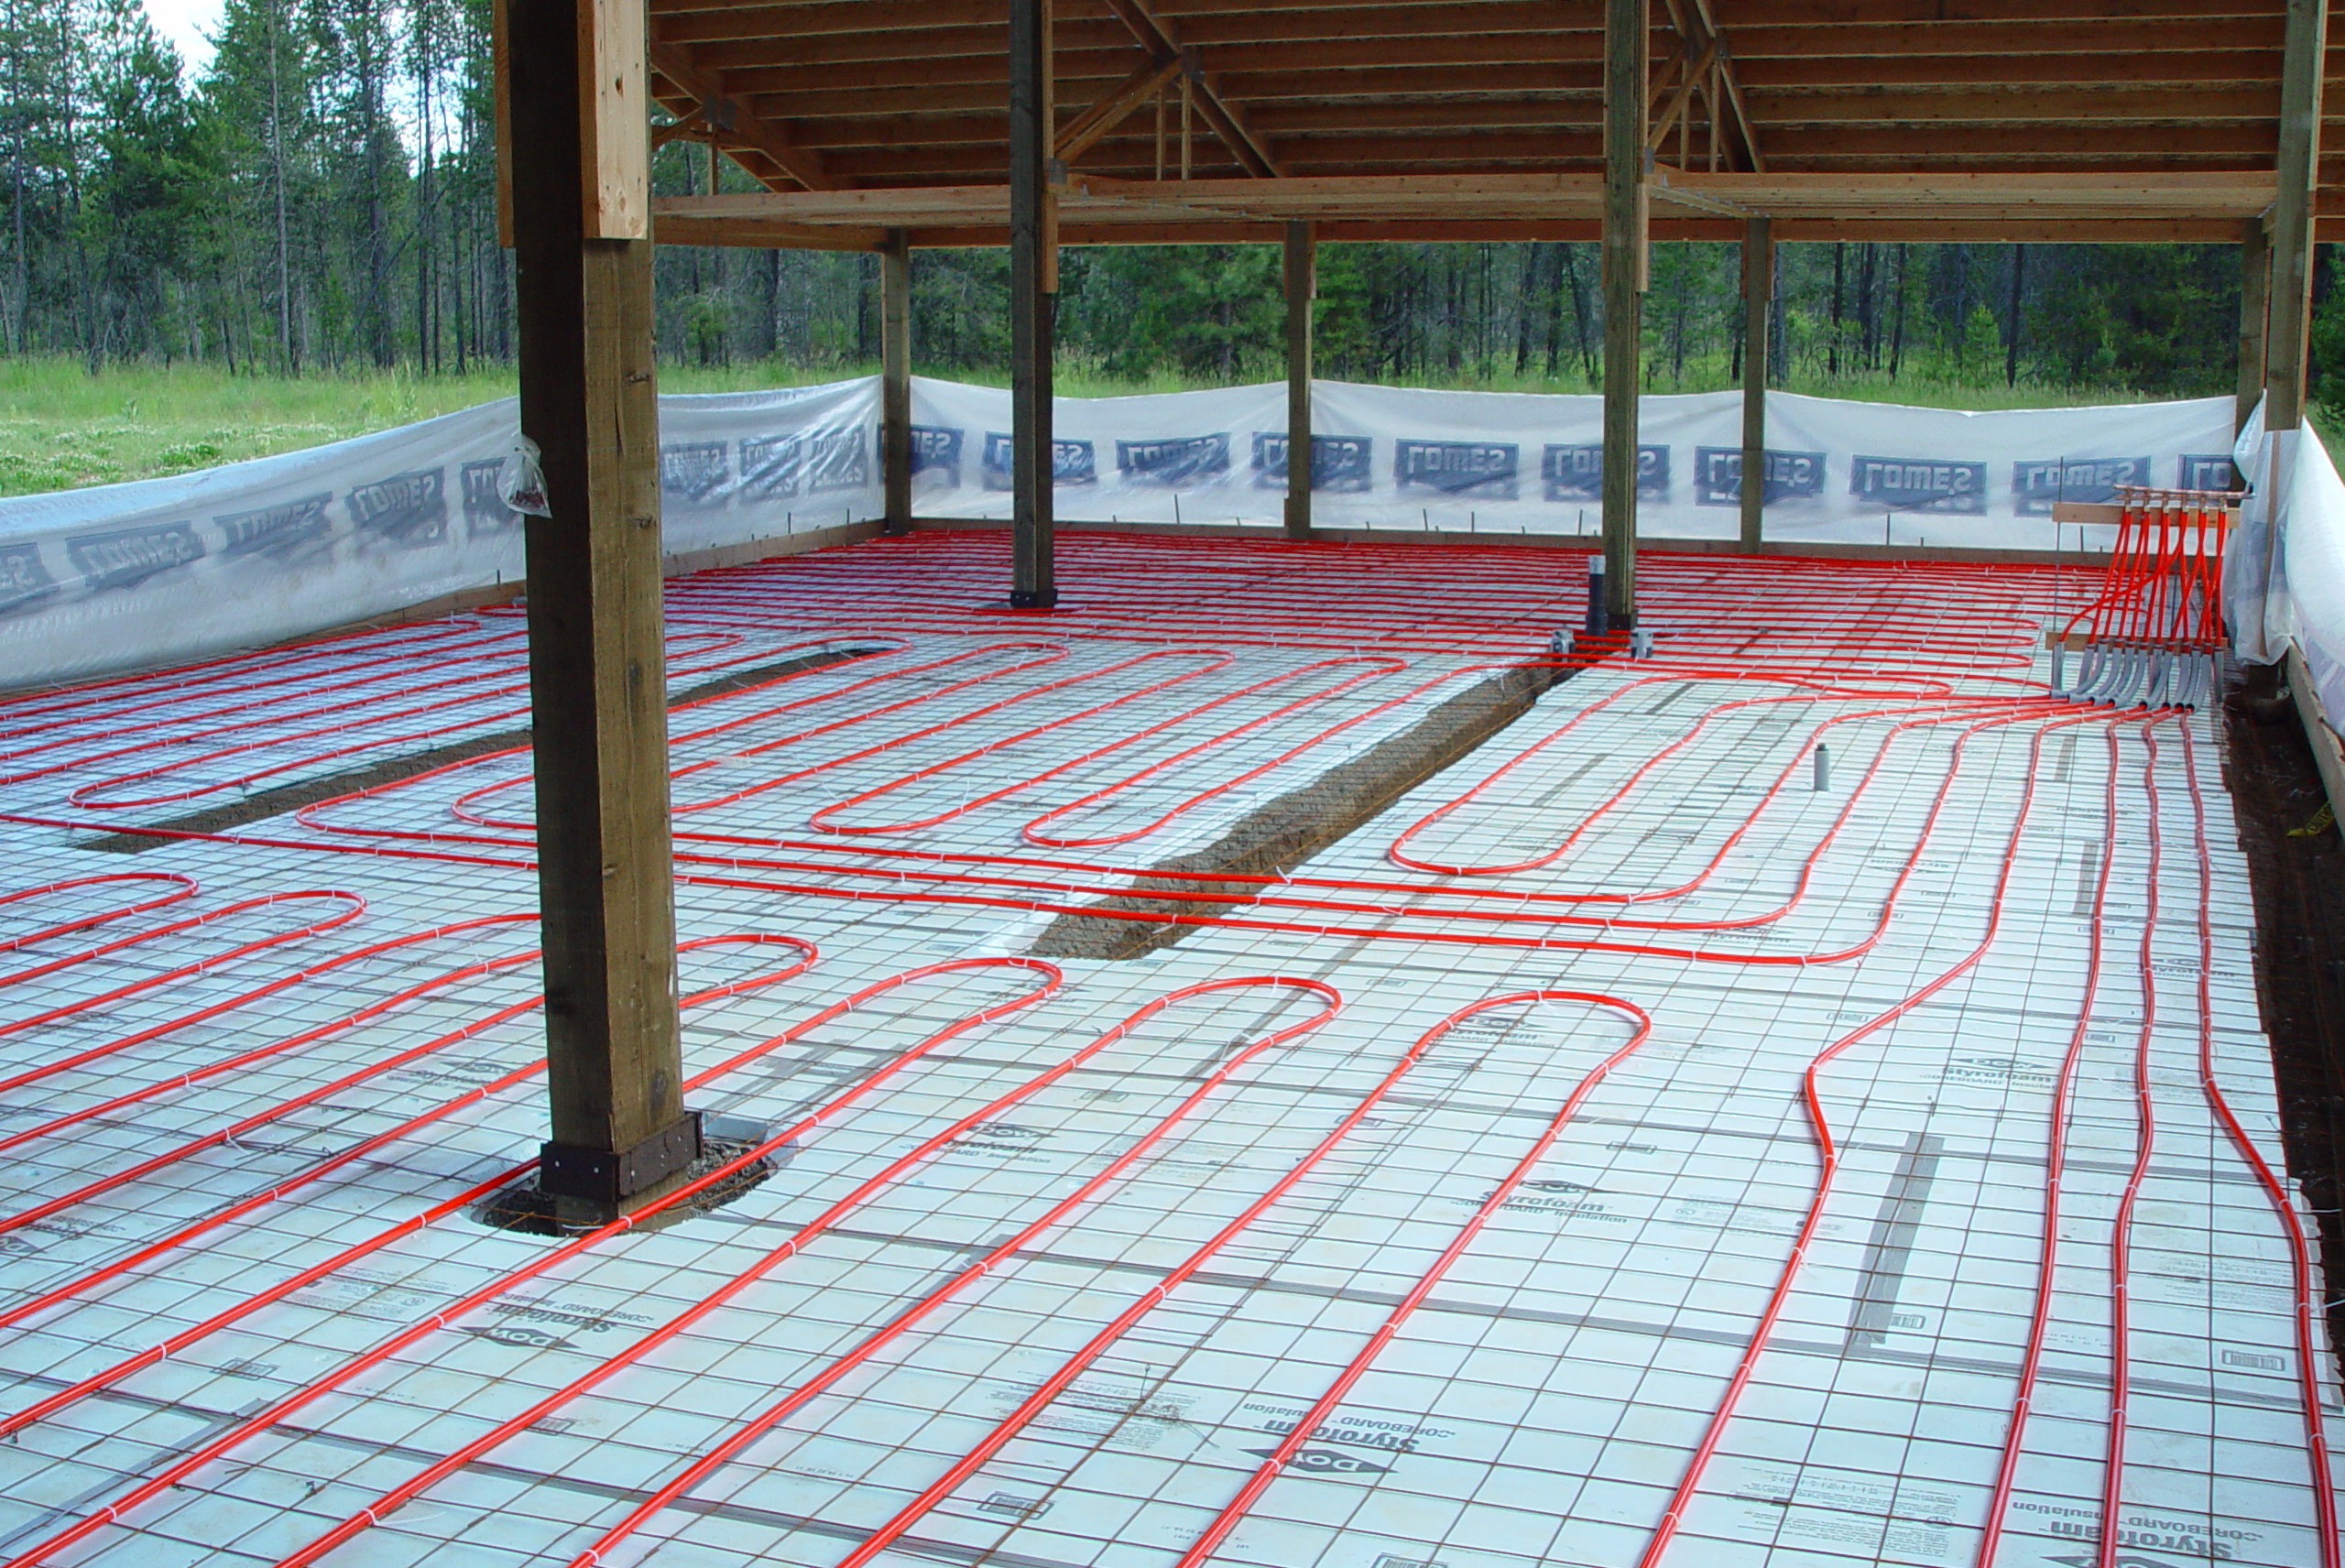 The Slab On Grade Installation Diy Radiant Floor Heating